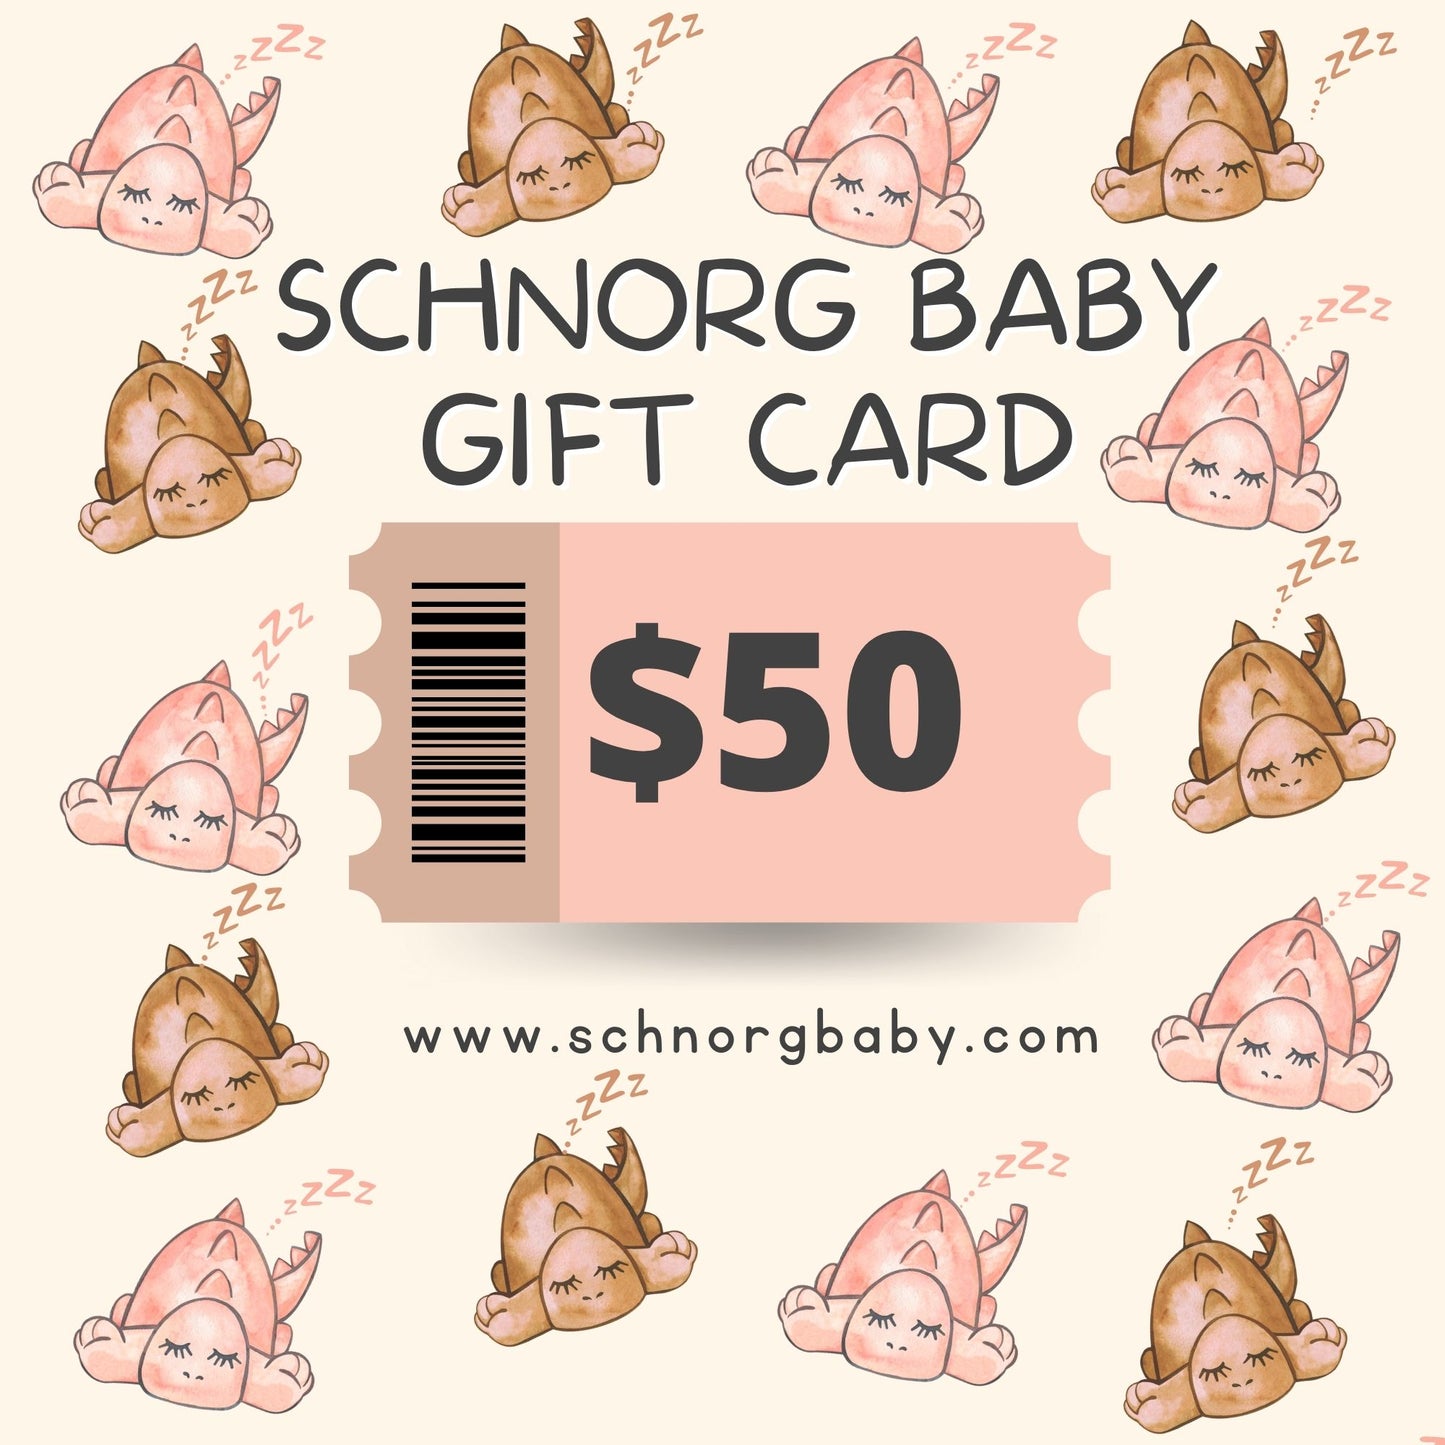 $50 SCHNORG GIFT CARD – SCHNORGBABY